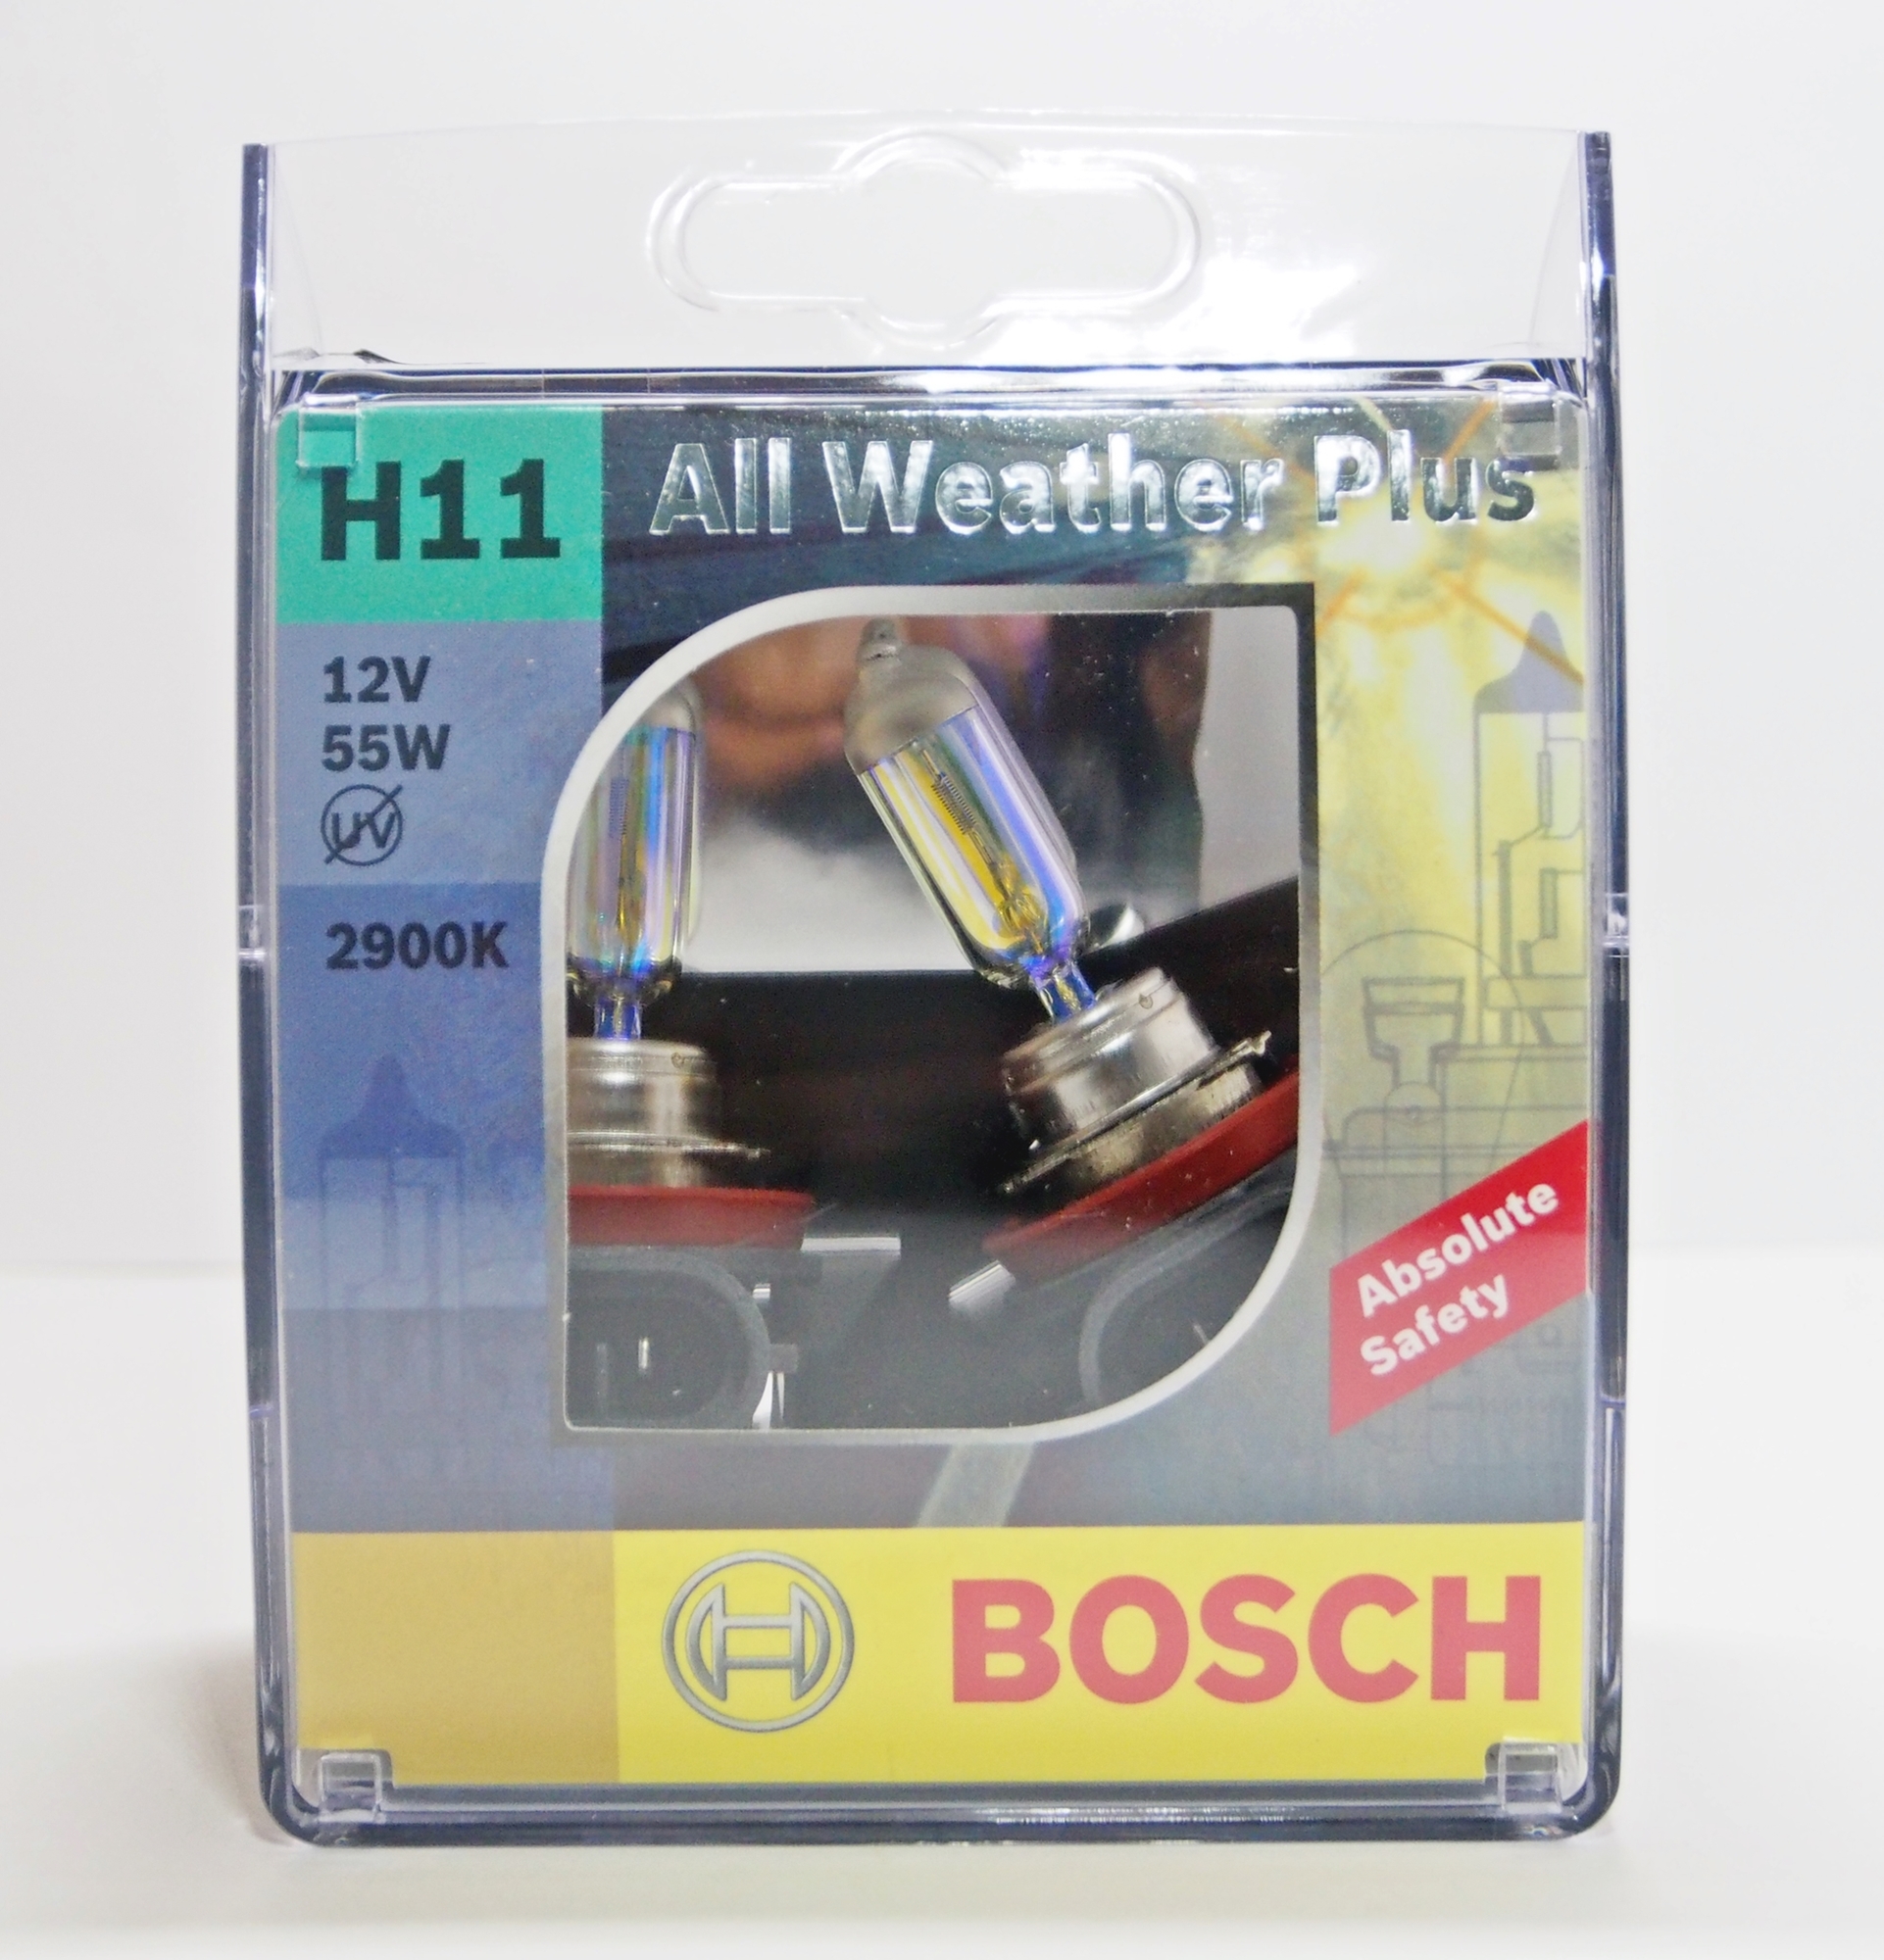 BOSCH หลอดไฟหน้ารถยนต์ H11 55W รุ่น All weather Plus สำหรับหลอดไฟหน้า และ ไฟตัดหมอก